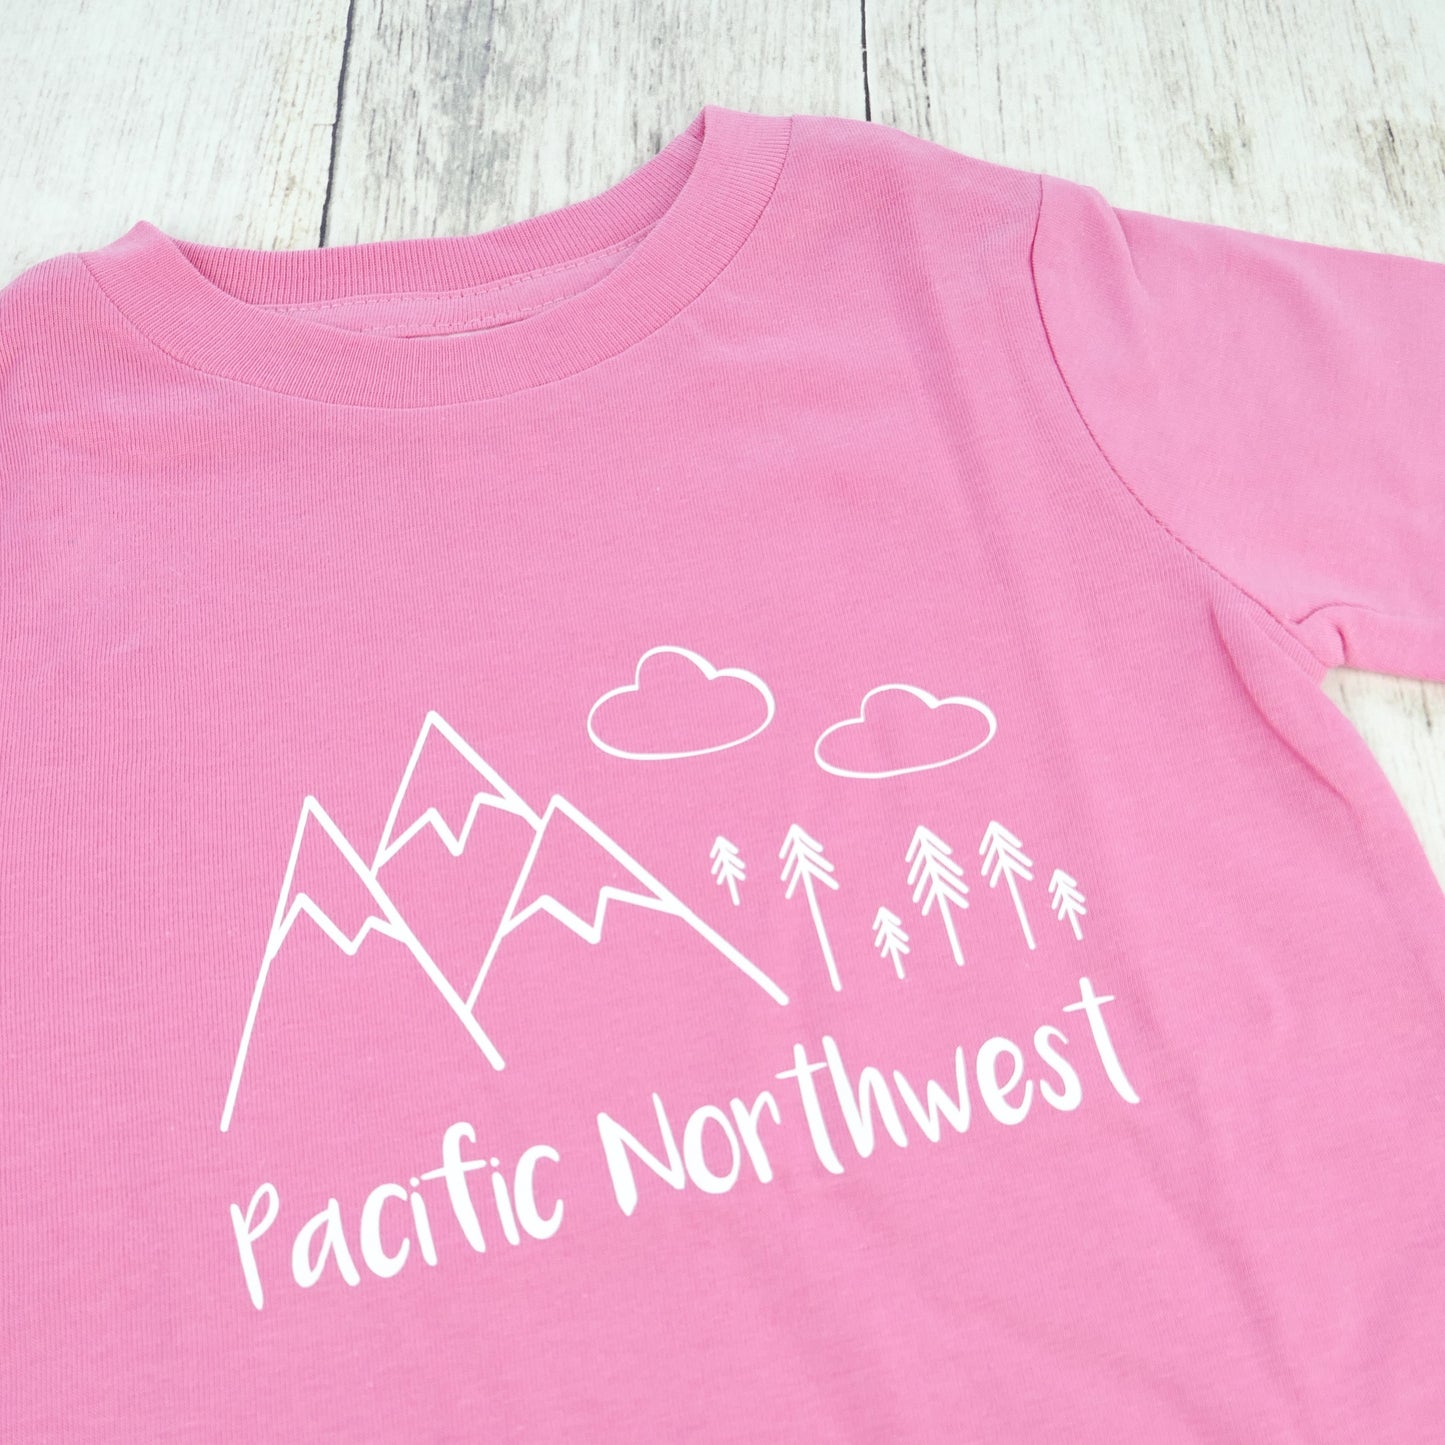 Pacific Northwest Organic Tee - Pink / White - CAVU Creations